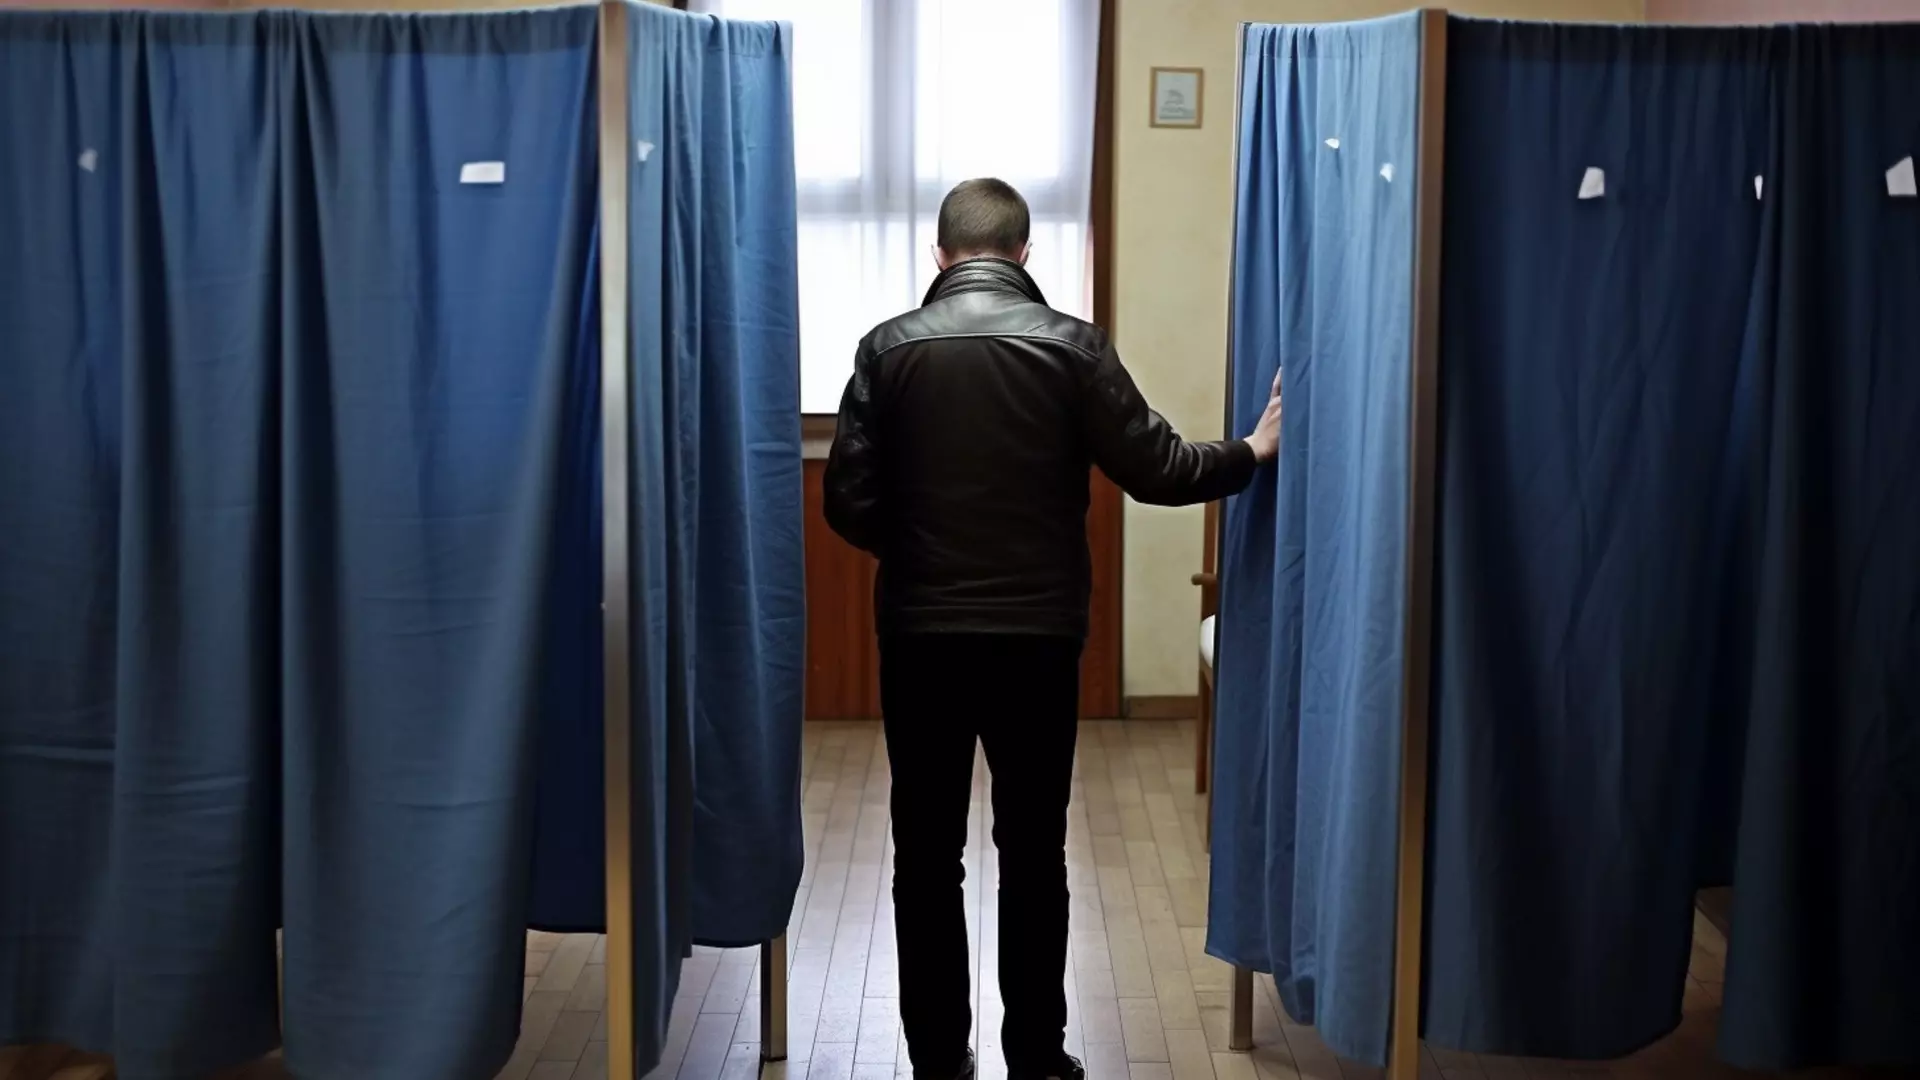 Бюллетени, которые пытались залить краской в Ростовской области, учтут при подсчете голосов